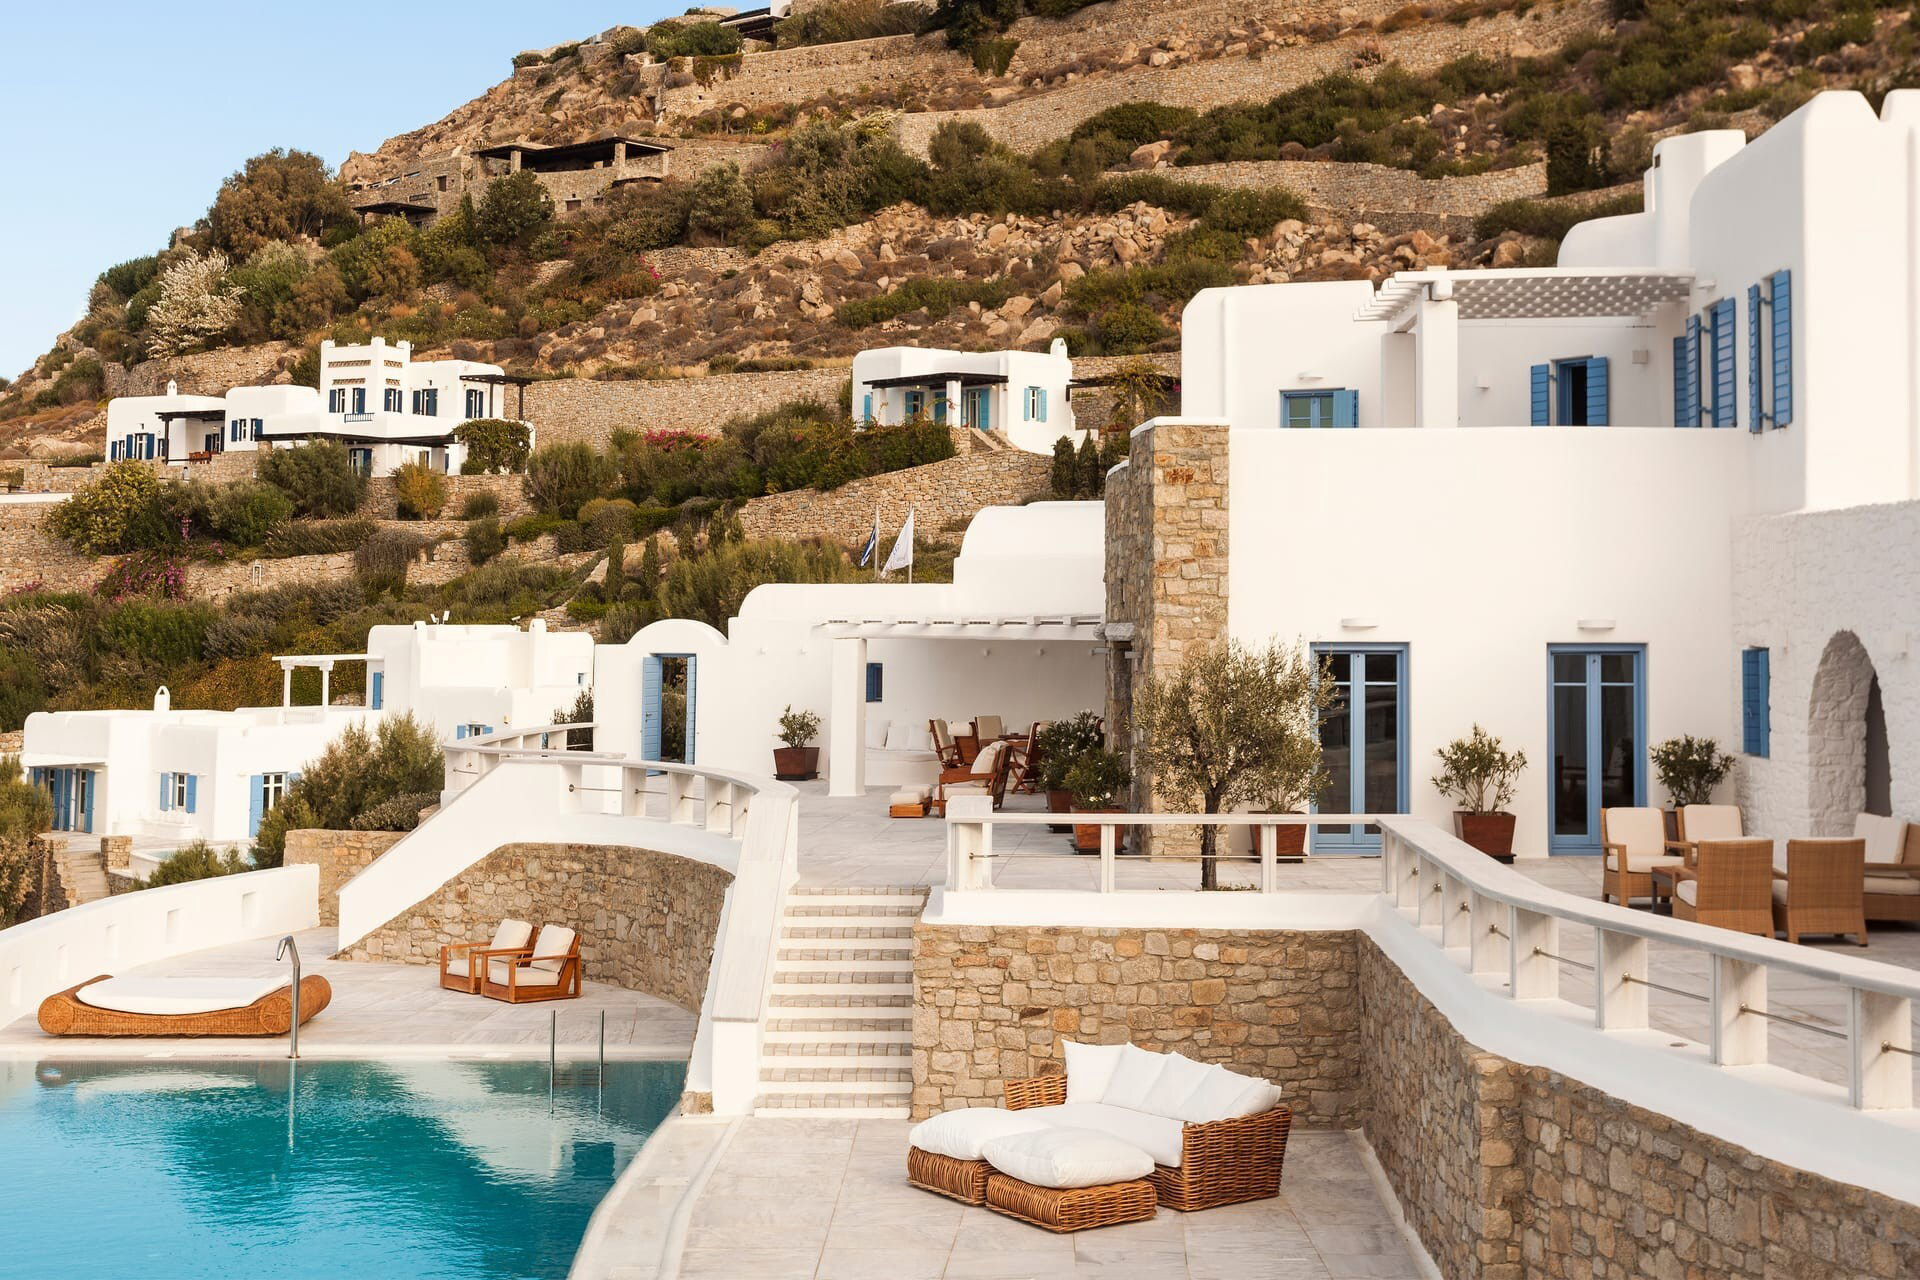 A white villa in Mykonos, Greece